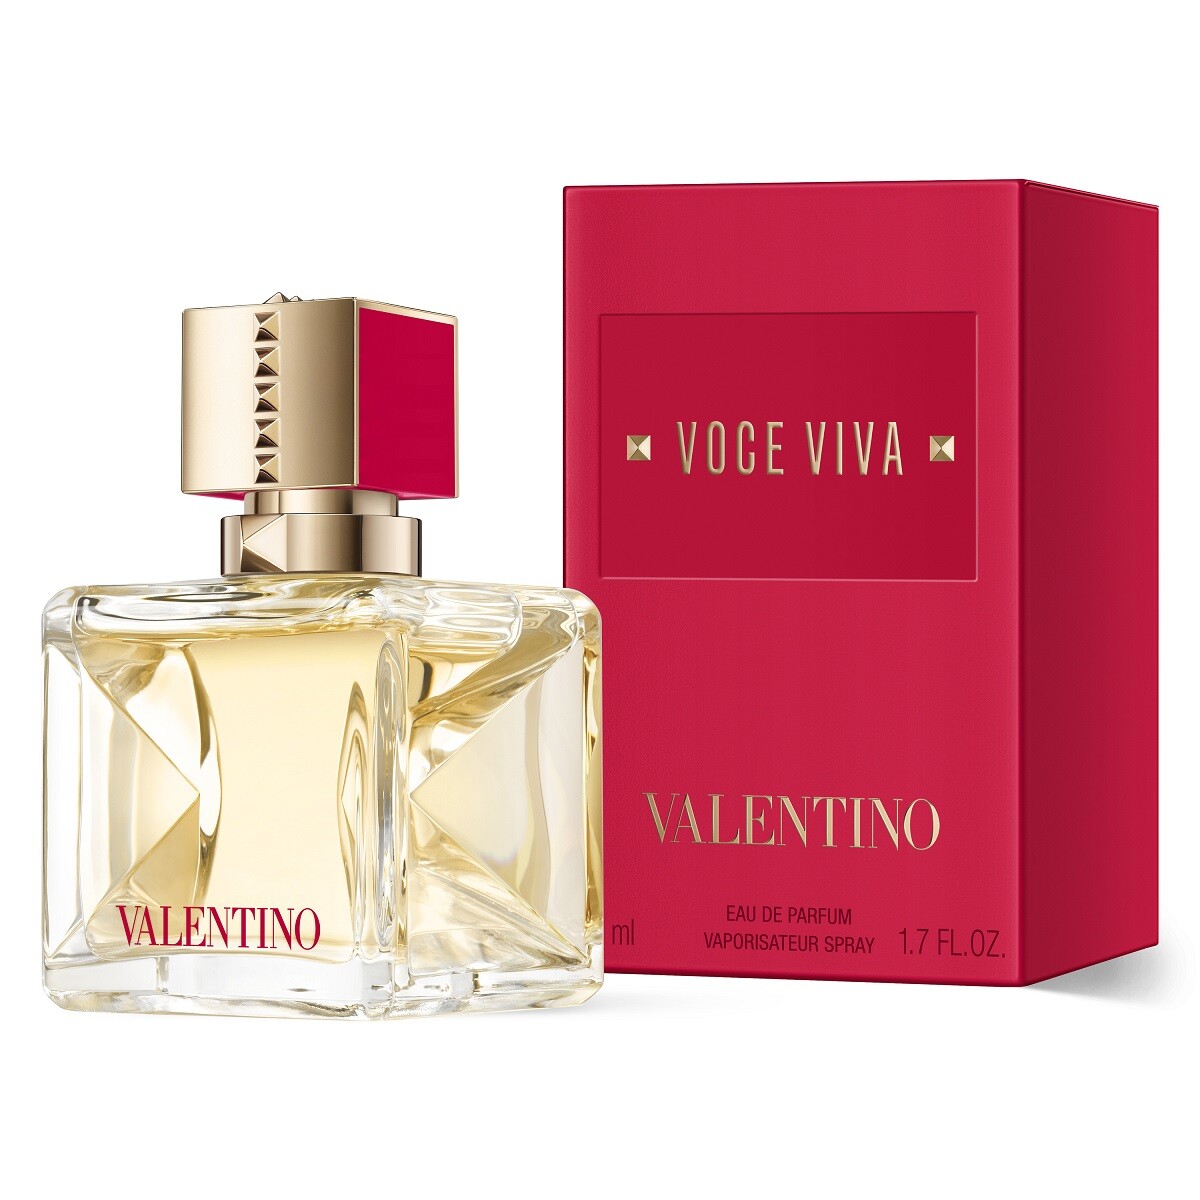 Perfume Valentino Voce Viva Edp 50 Ml. 